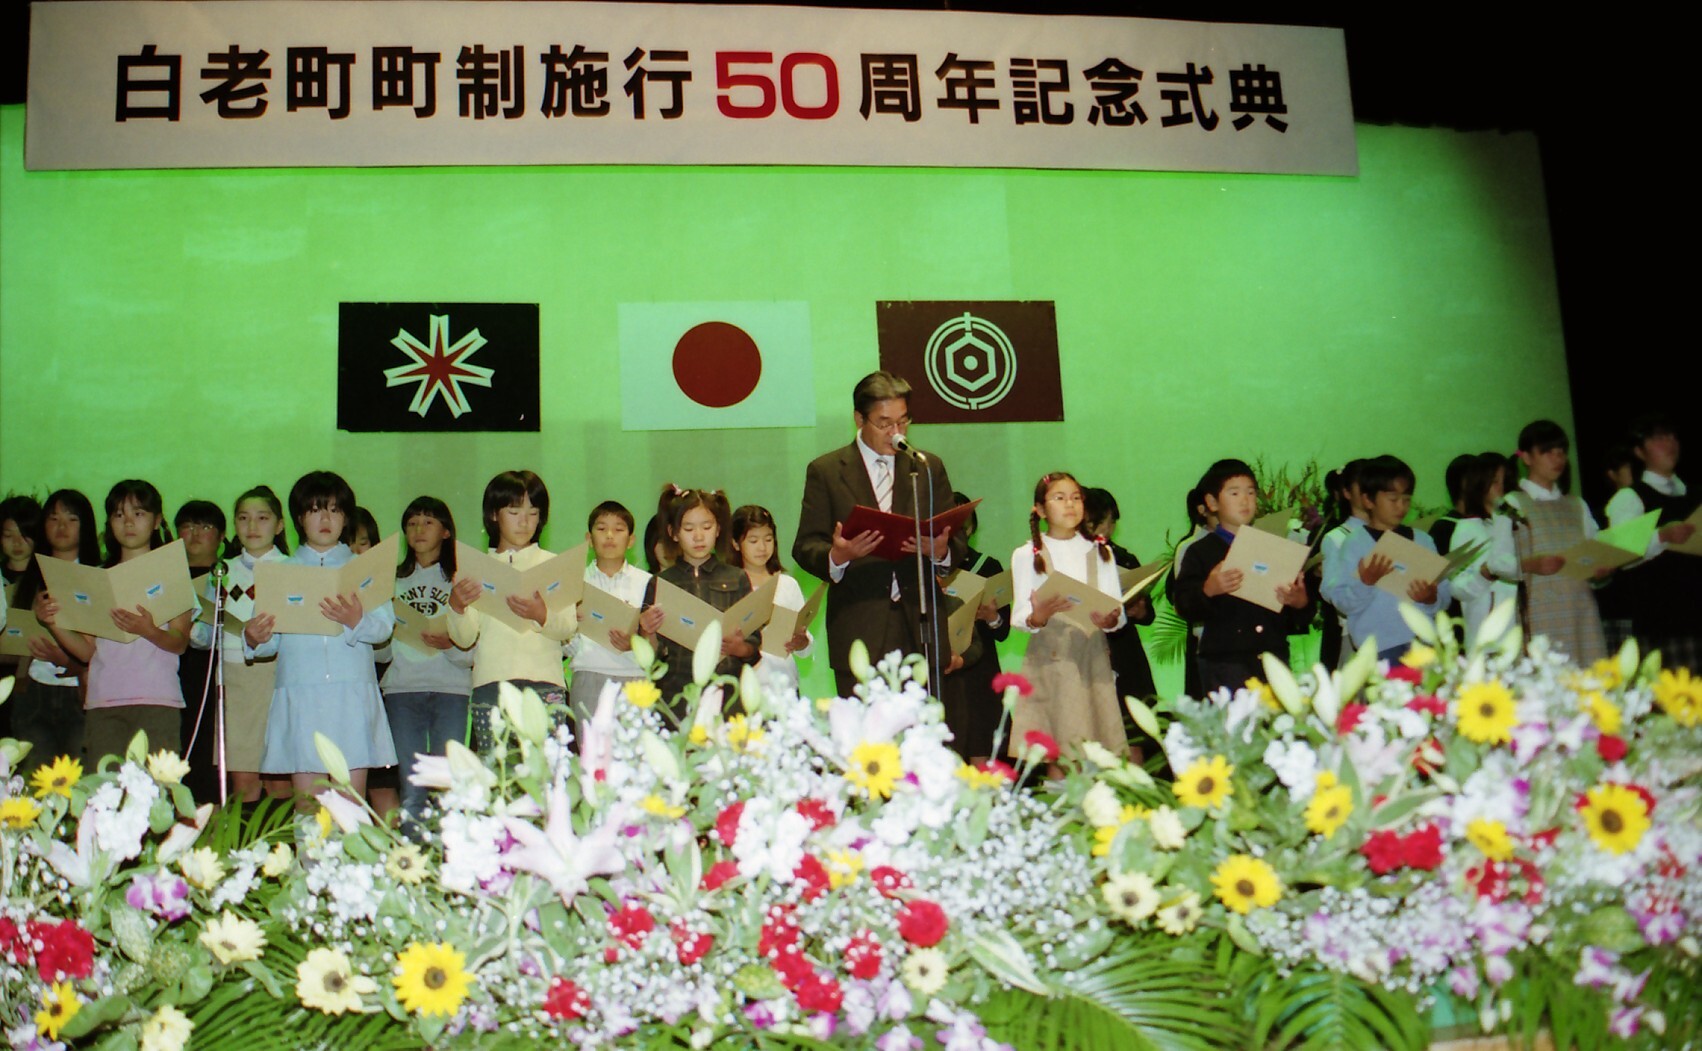 町制施行50周年記念式典の様子の写真